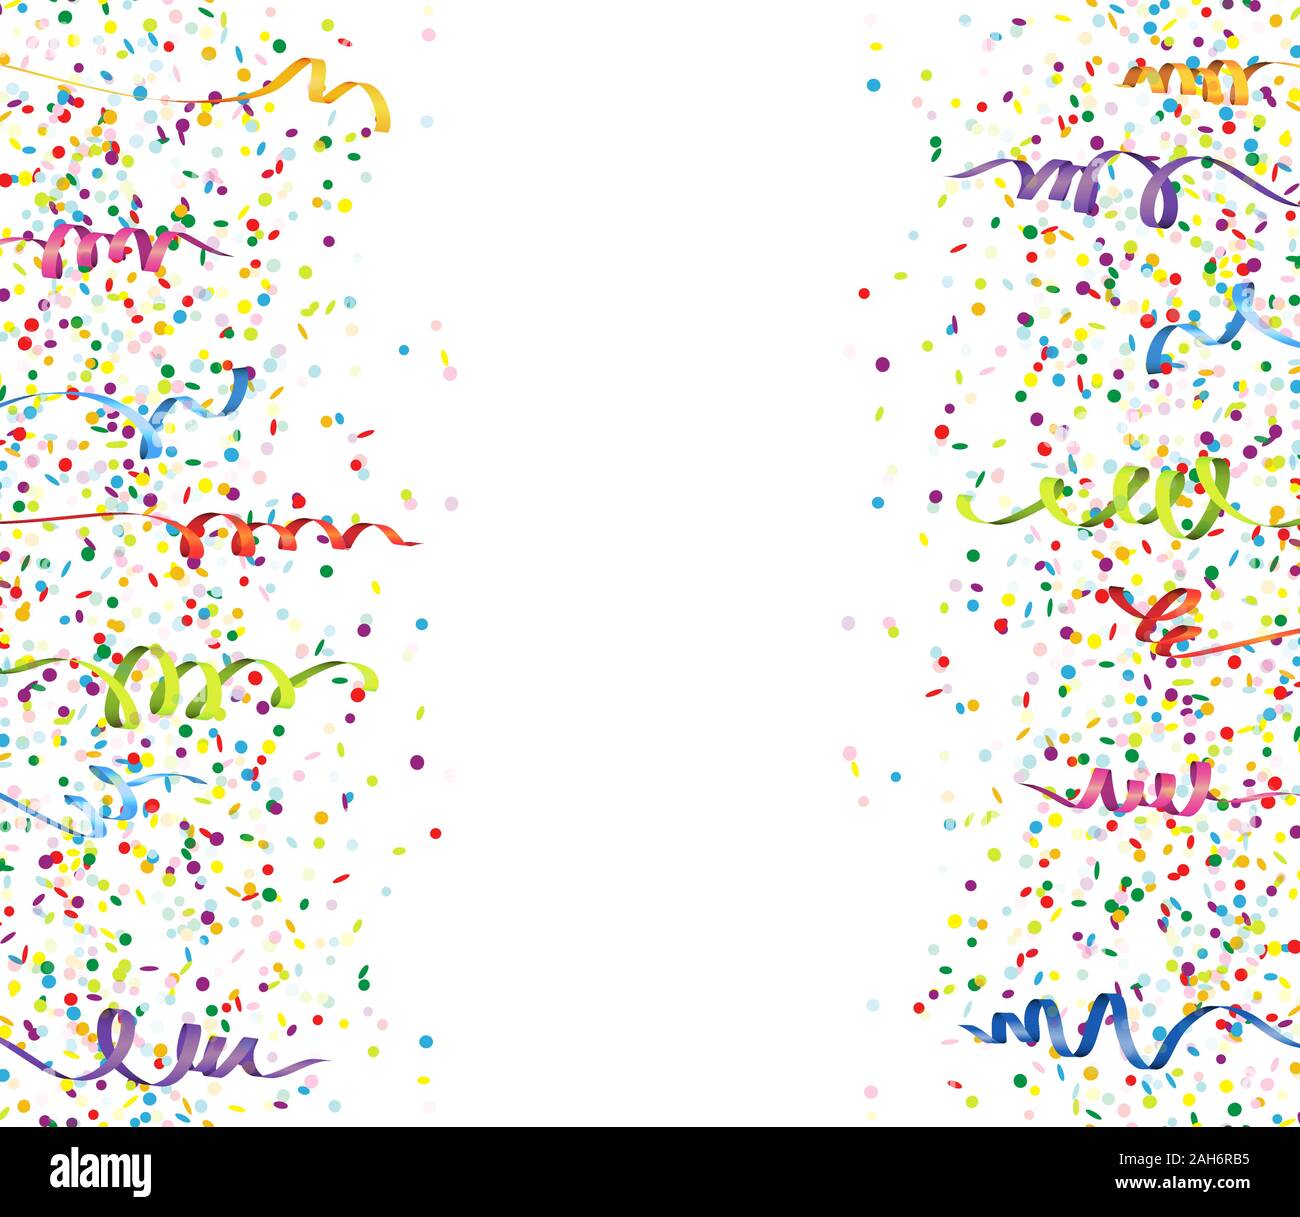 Vector illustration de confettis multicolores transparente et banderoles pour carnaval ou fête sur fond blanc Illustration de Vecteur